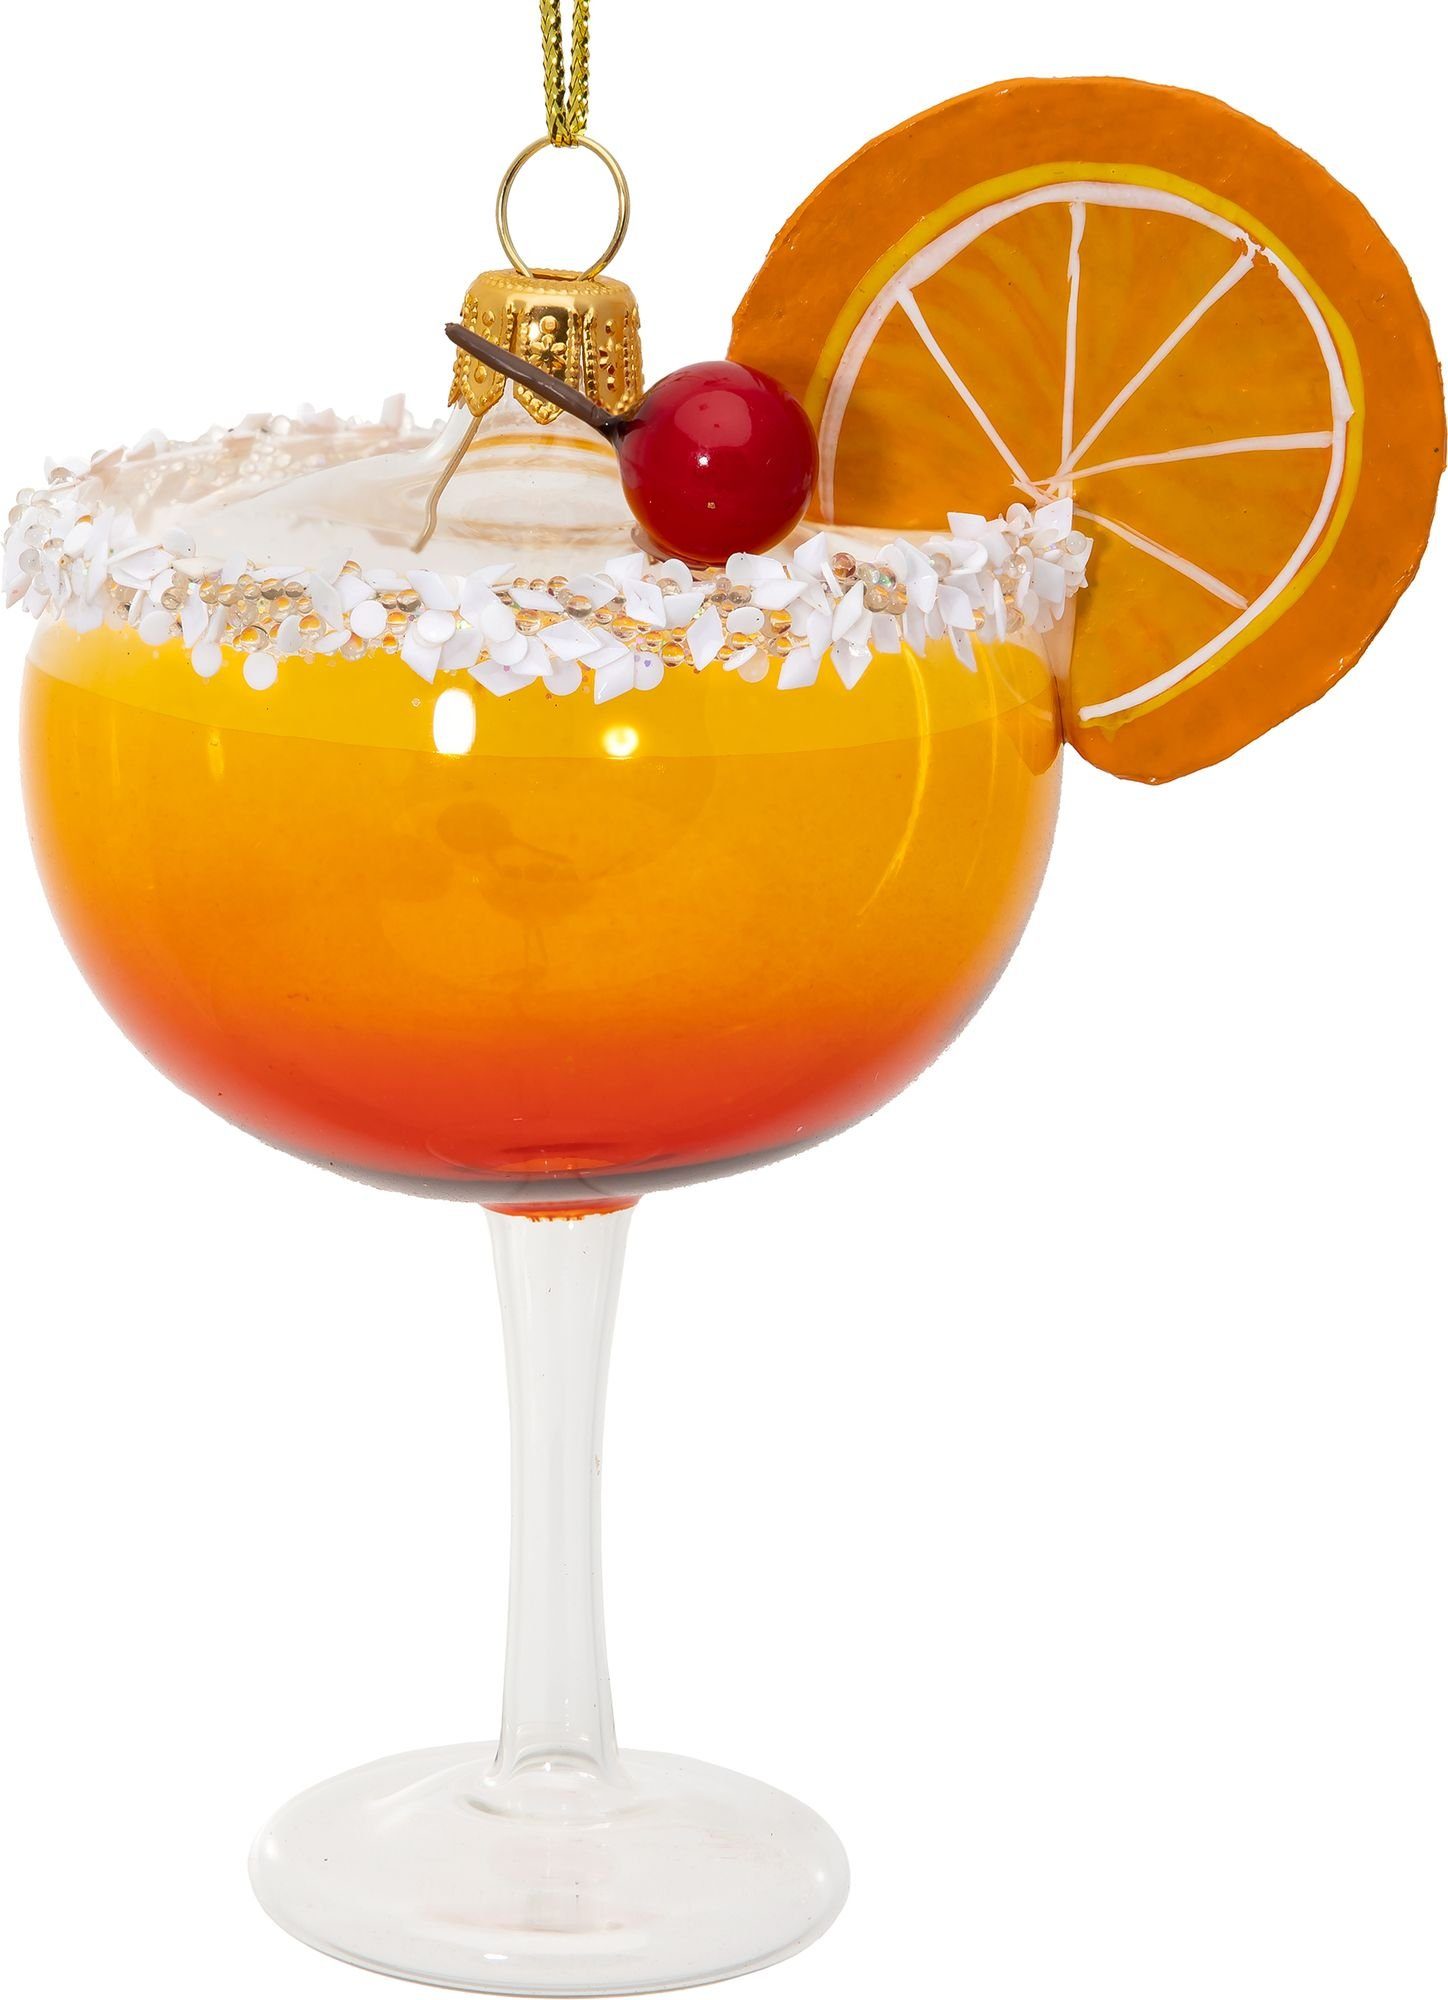 SIKORA Christbaumschmuck BS725 Cocktail Glas mit Orange Glas Weihnachtsbaum Anhänger - Premium Line